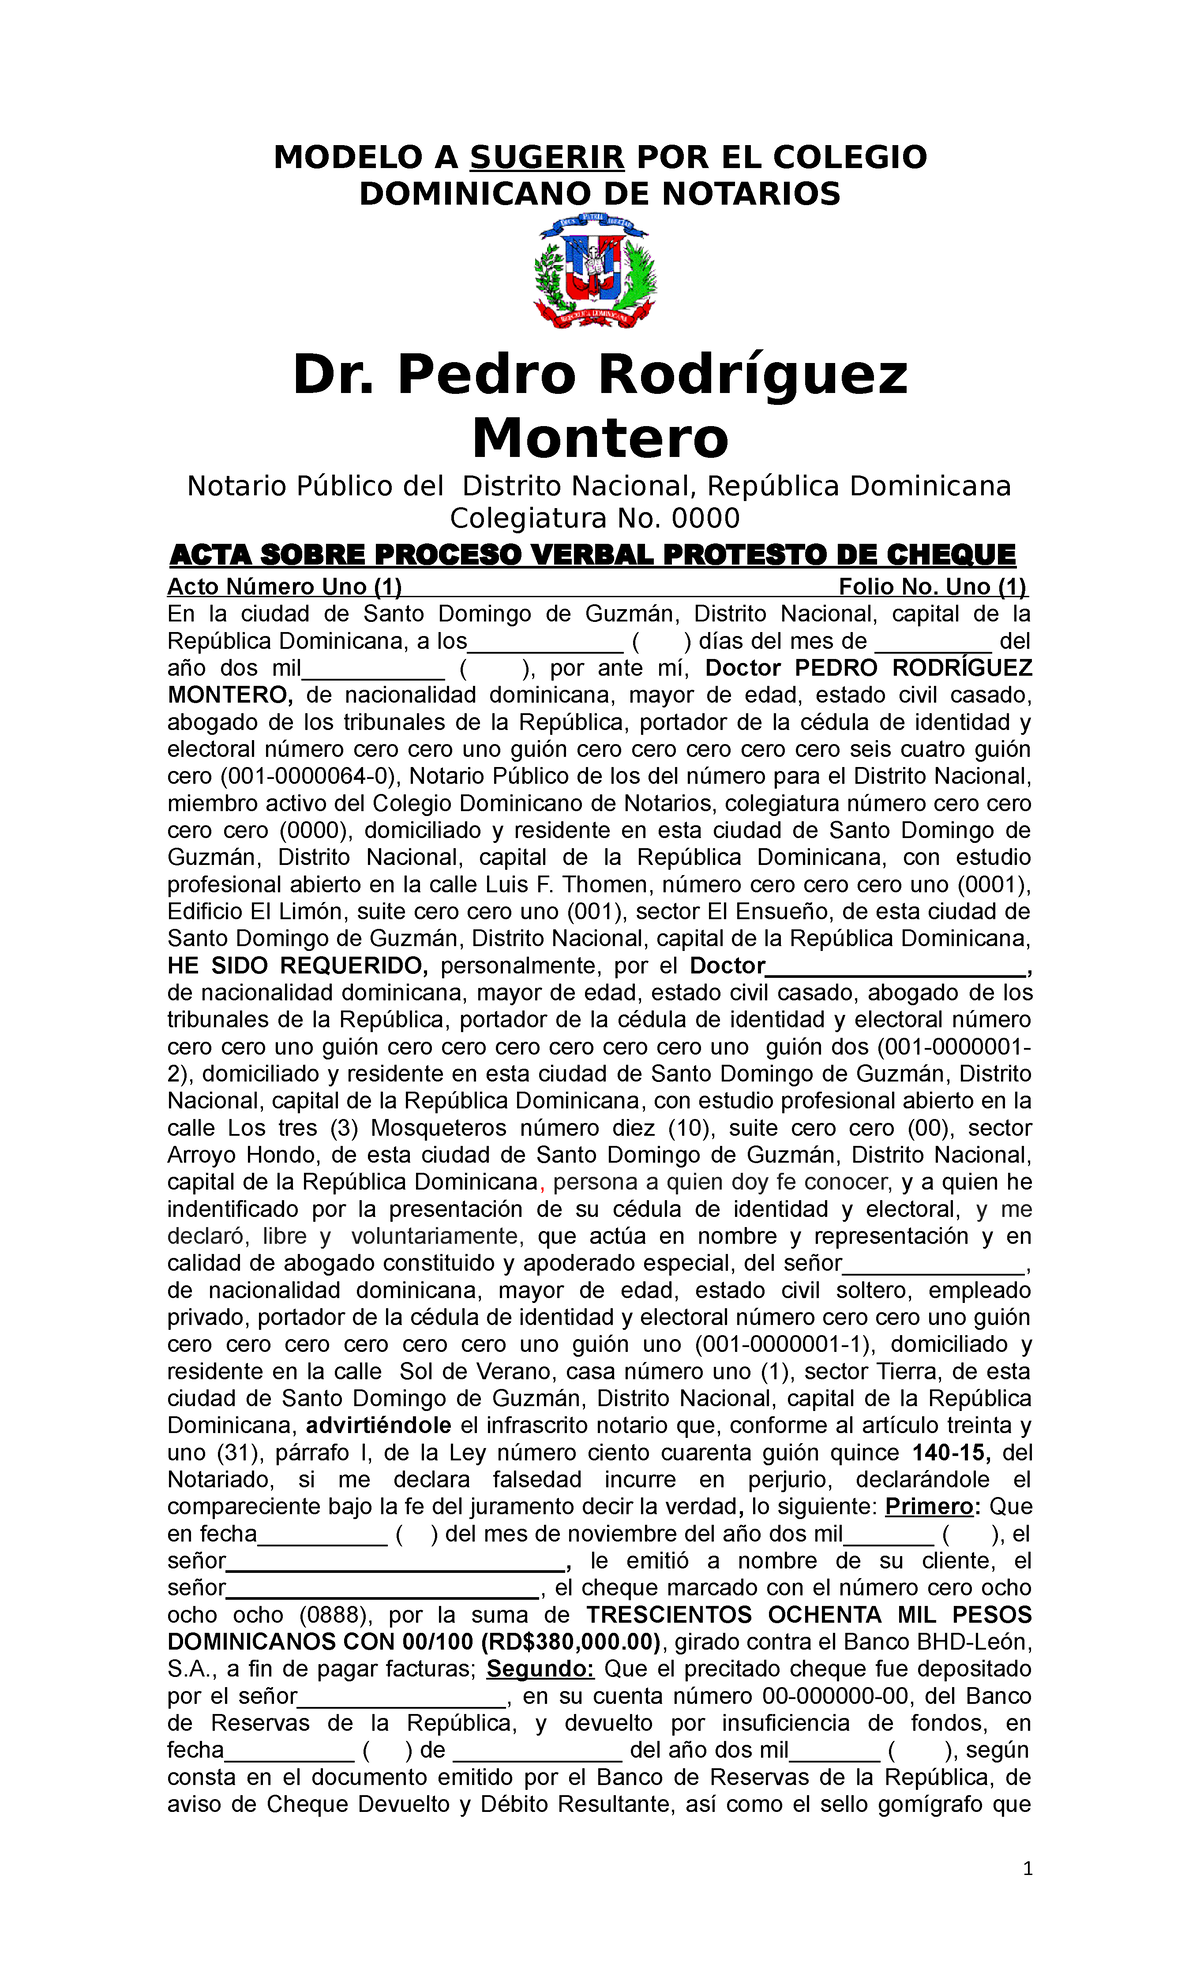 Modelo Acta de Proceso de Protesto de Cheques Ley 140-15 CD - MODELO A  SUGERIR POR EL COLEGIO - Studocu